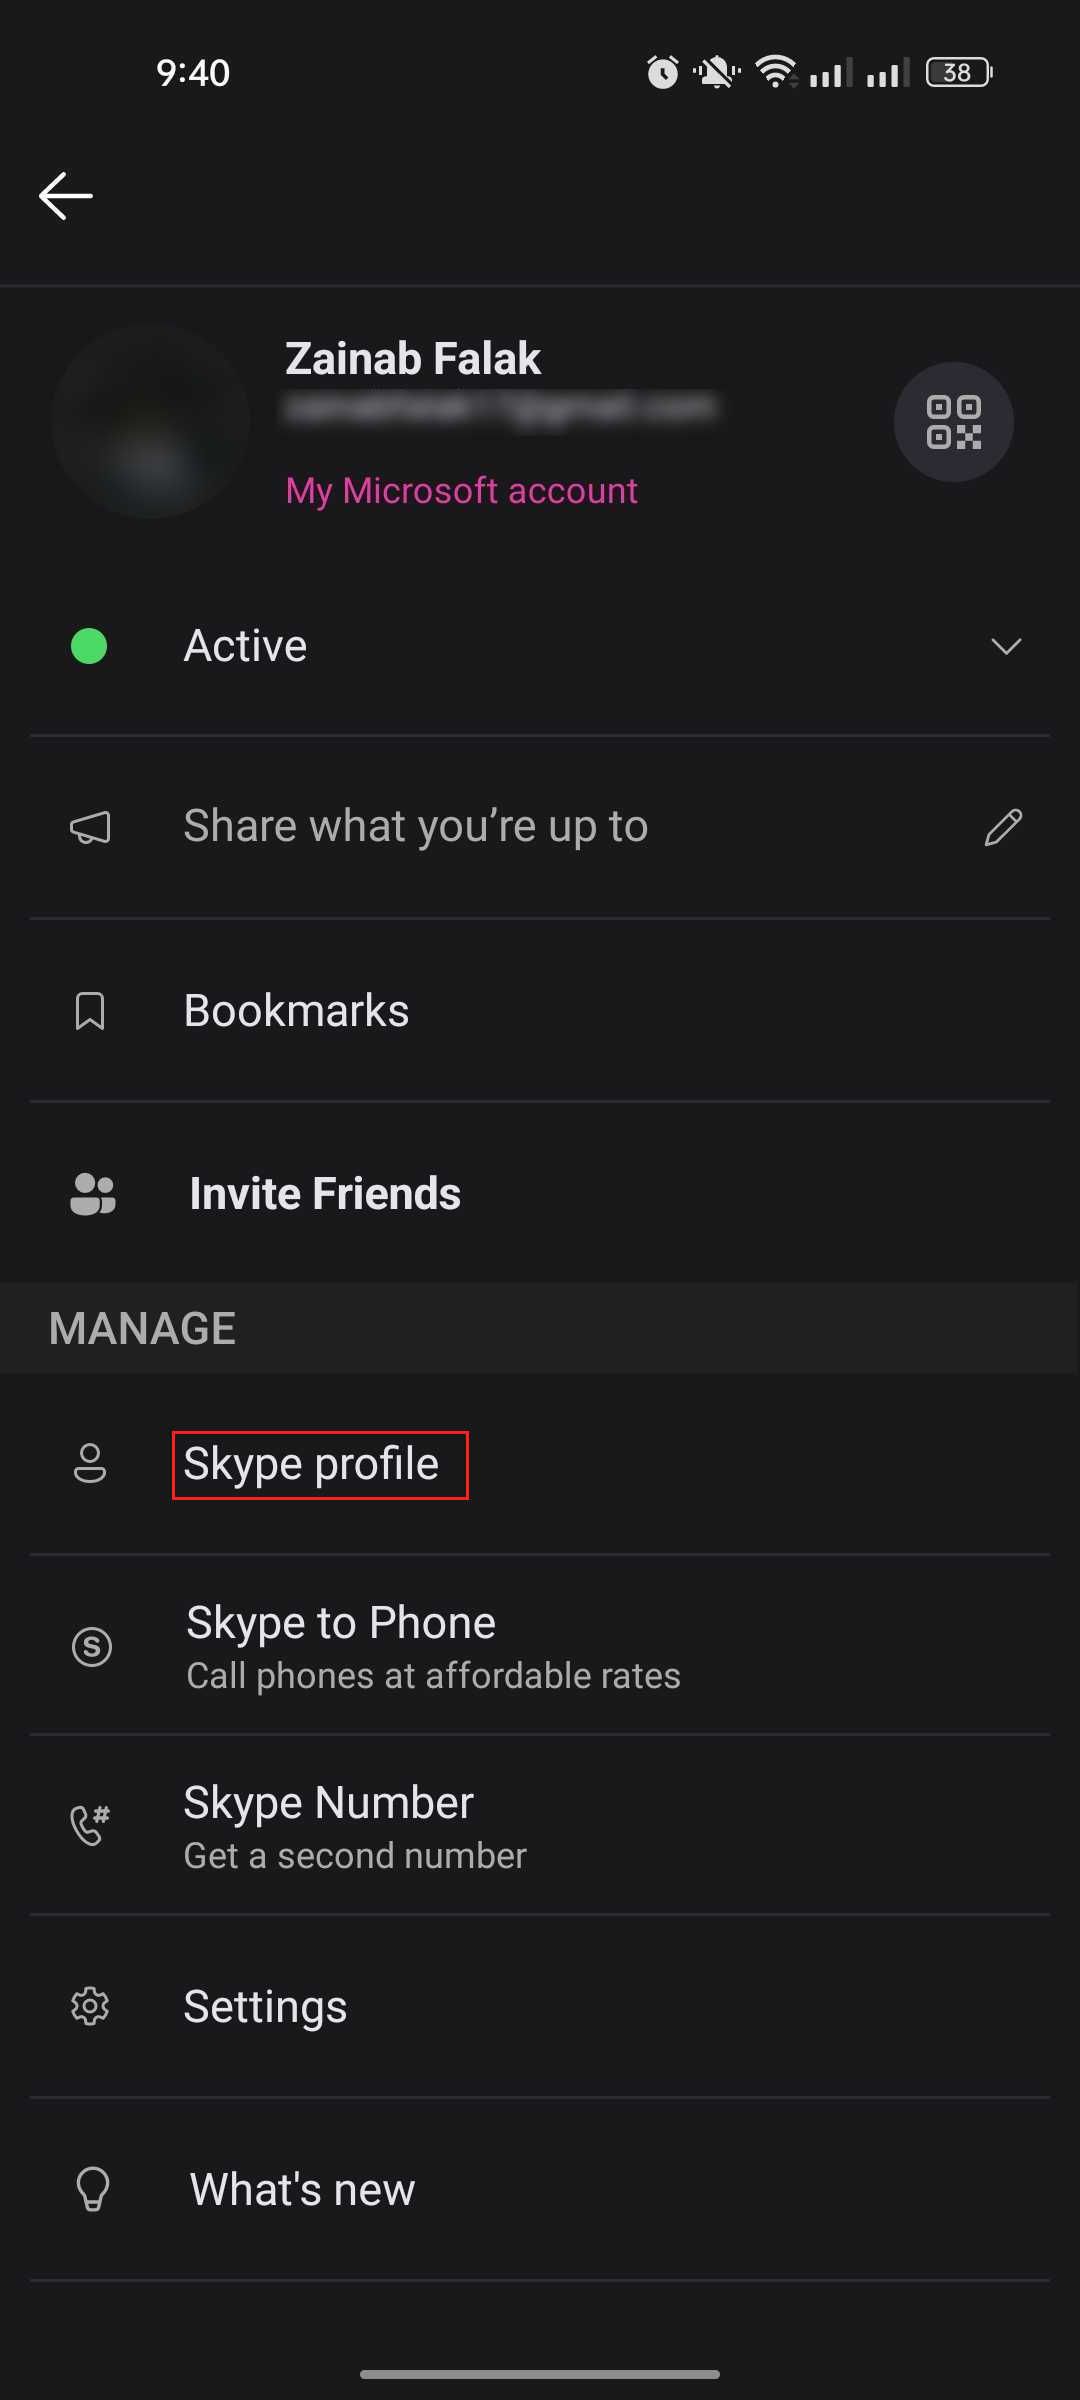 Clique na opção de perfil do Skype